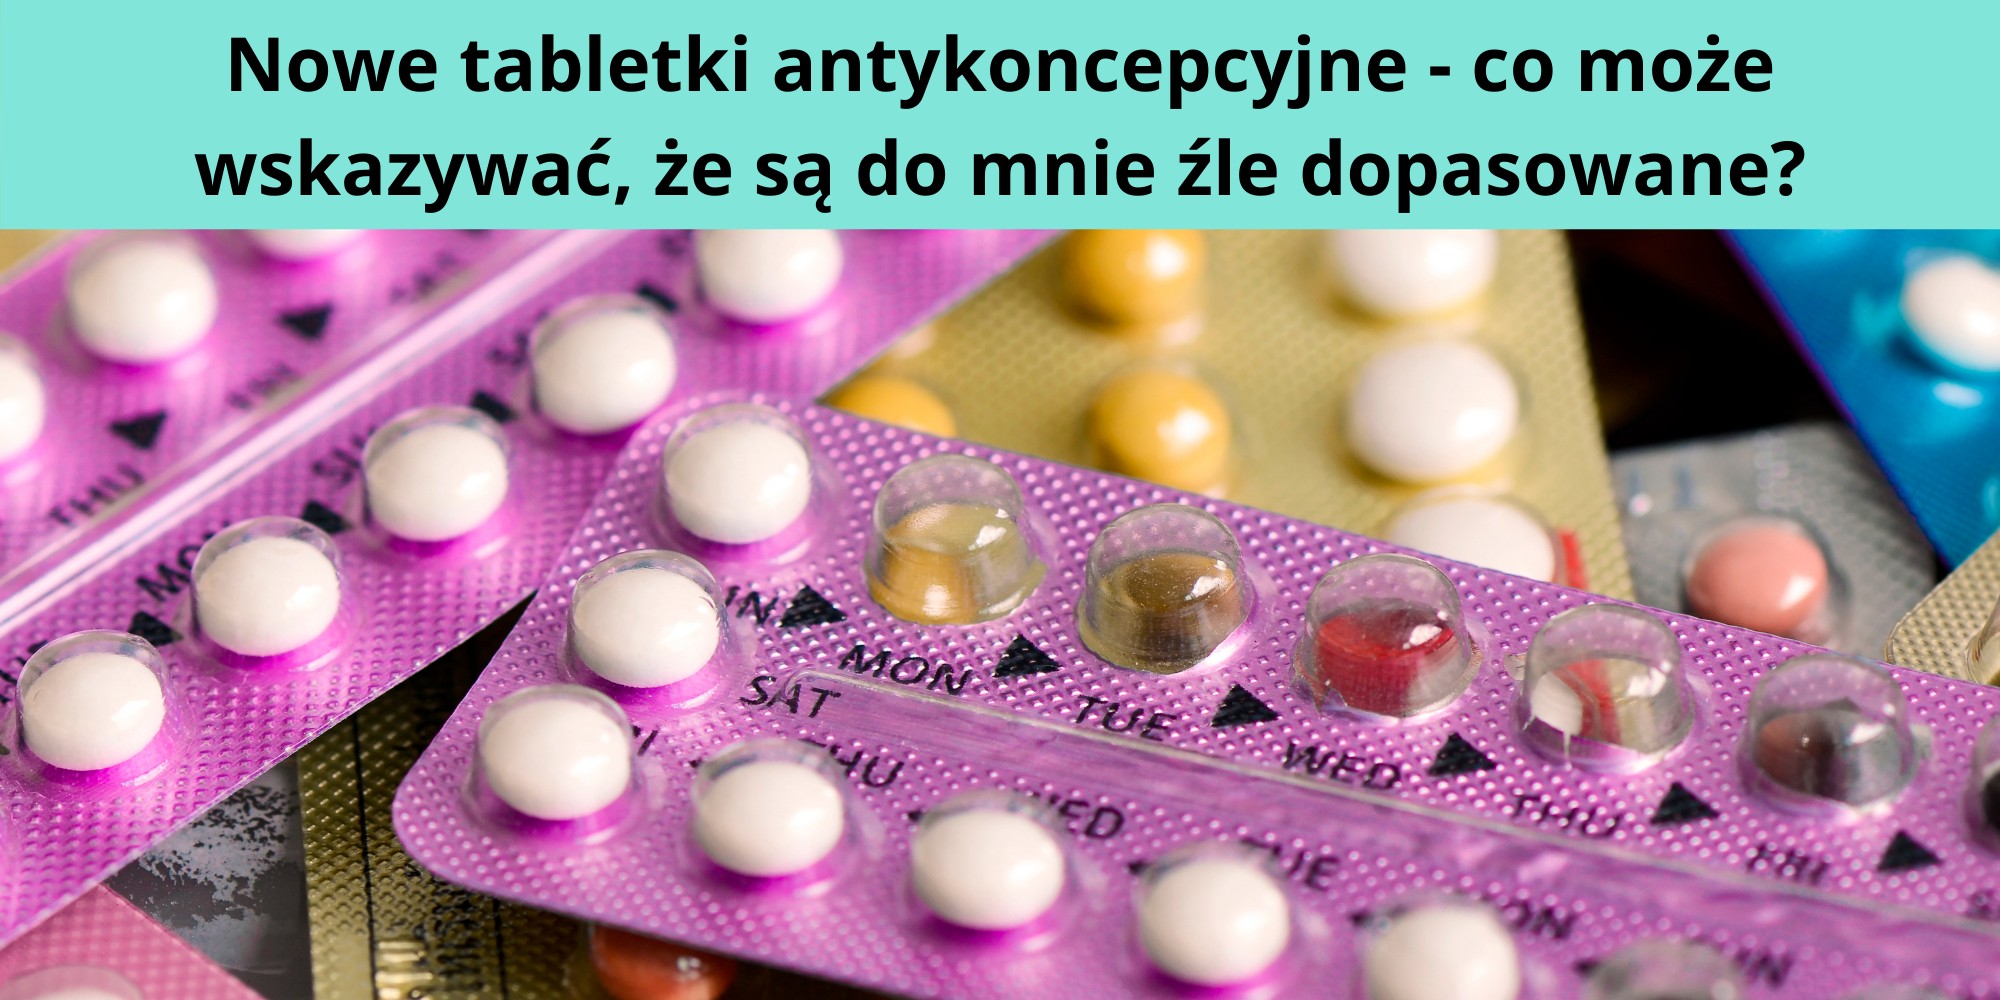 źle dopasowane tabletki antykoncepcyjne